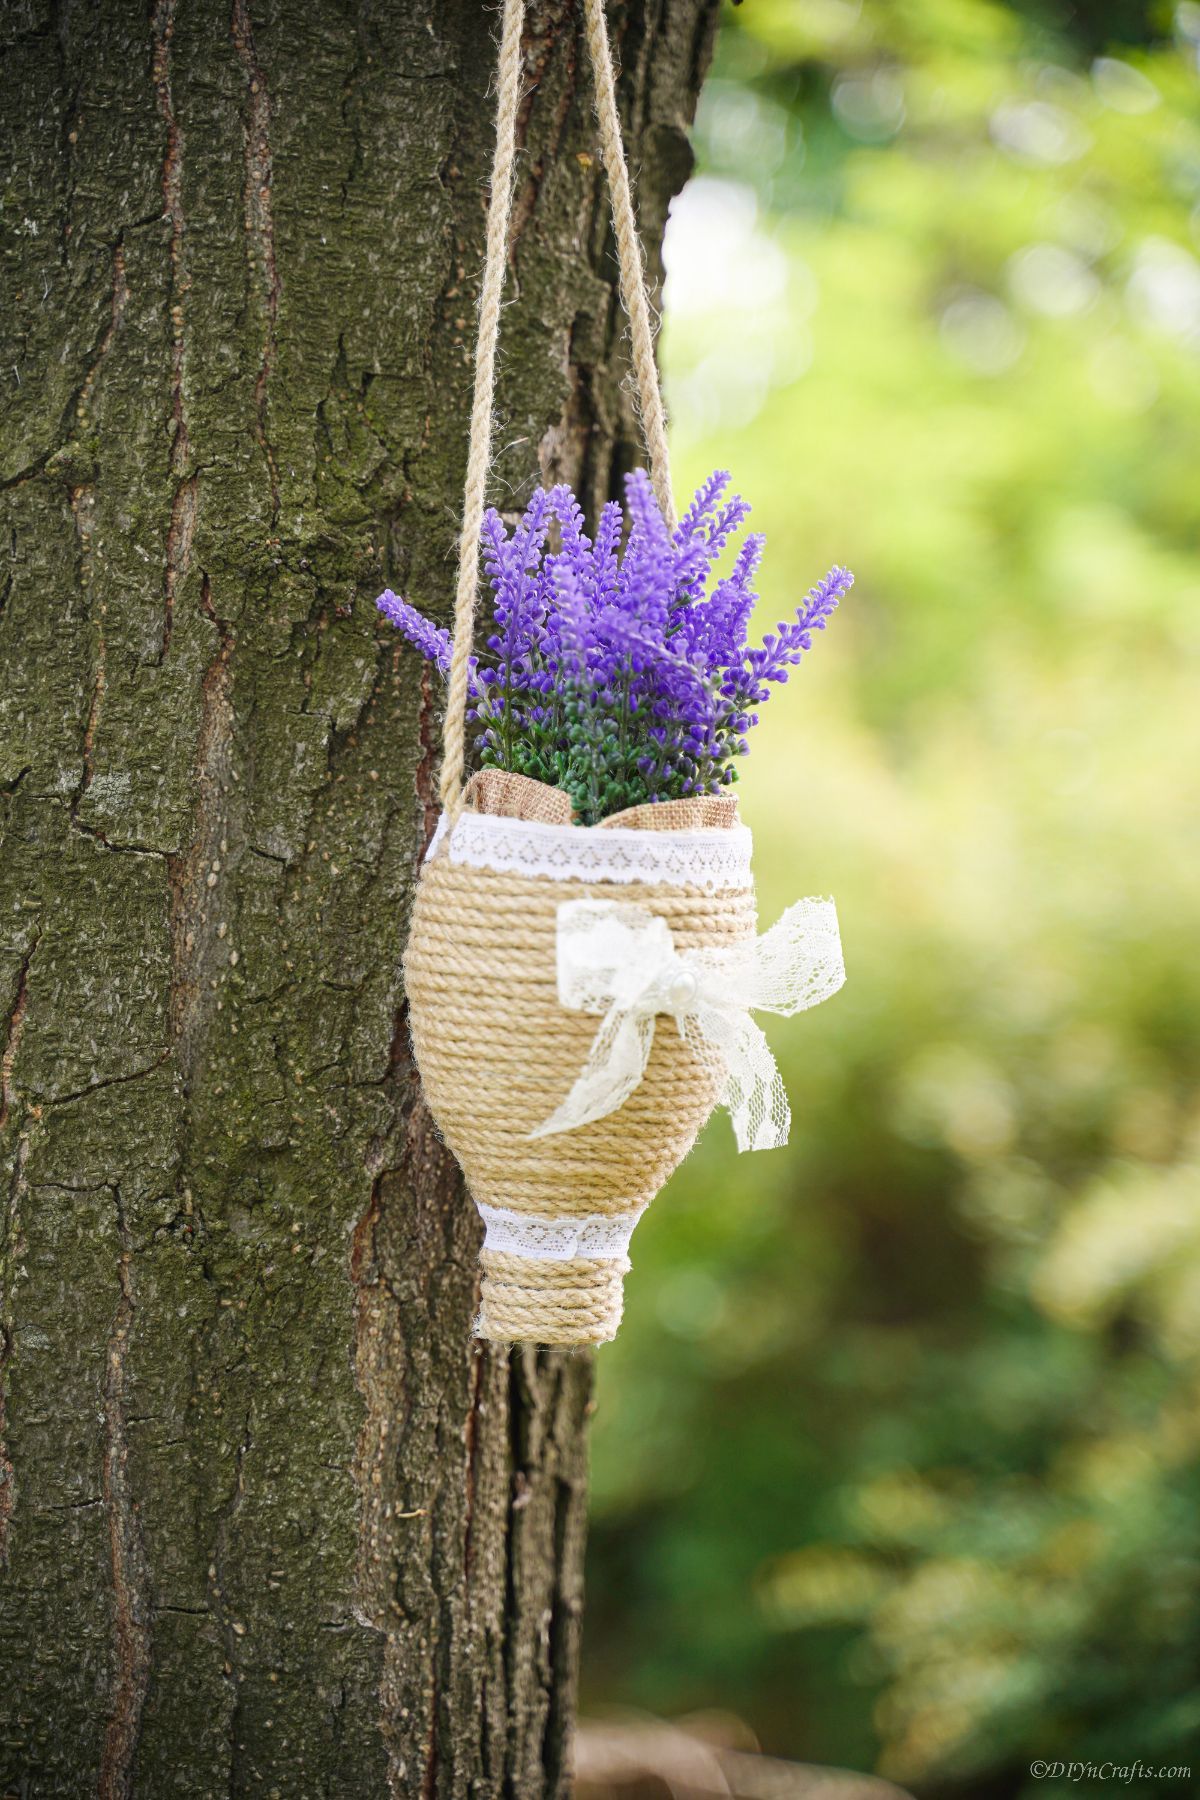 purple flowers on twine hanging planter on tree